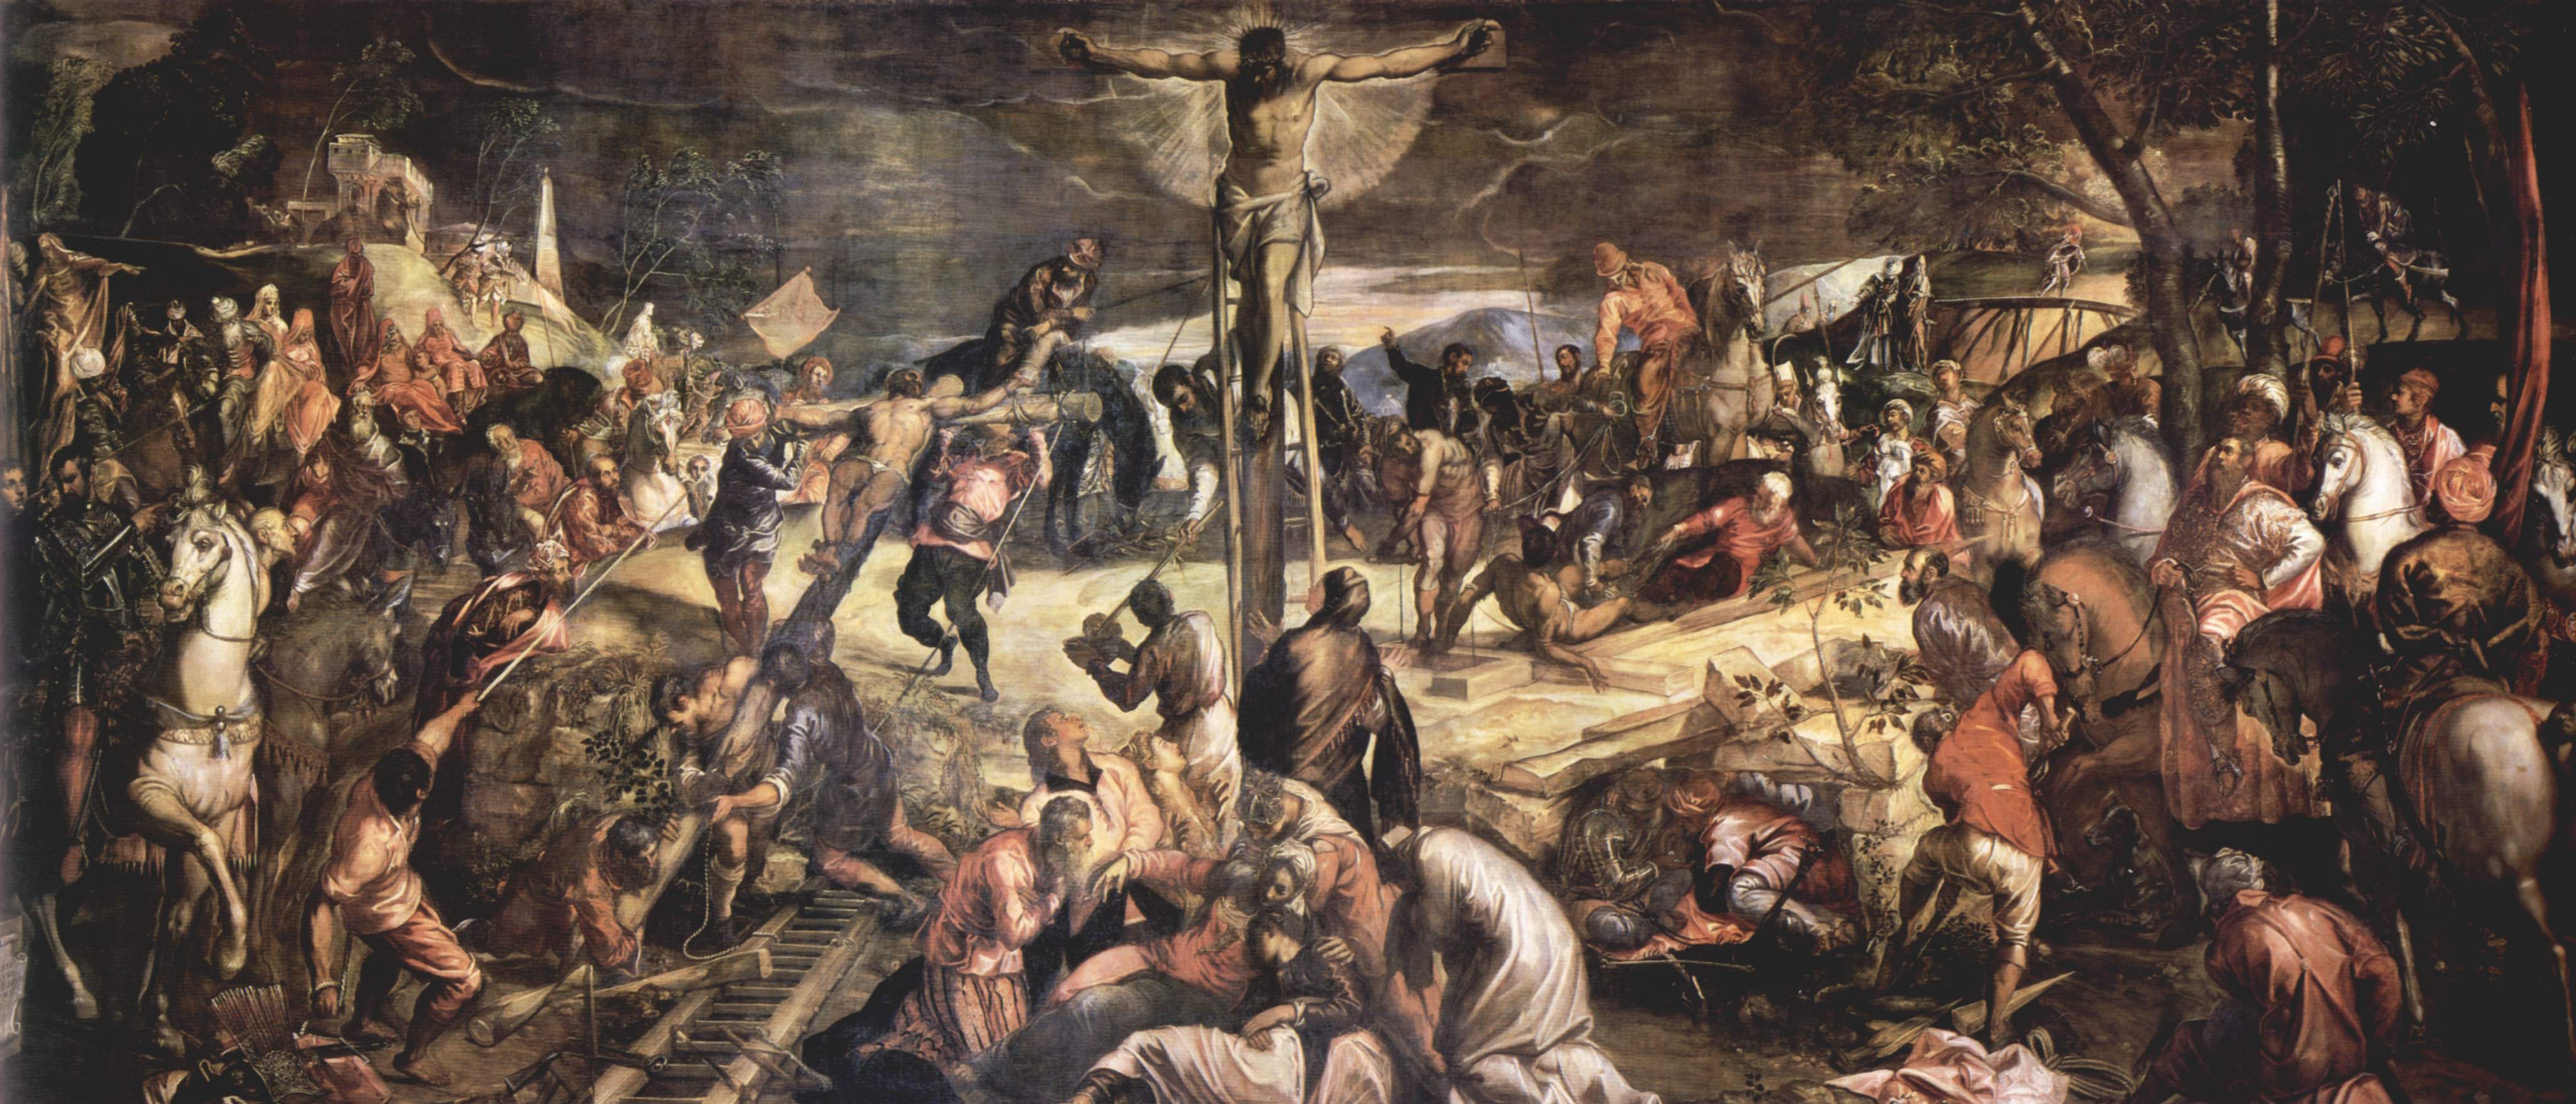 crucifixion-Tintoret 1565 Scuola Grande di San Rocco, Venice